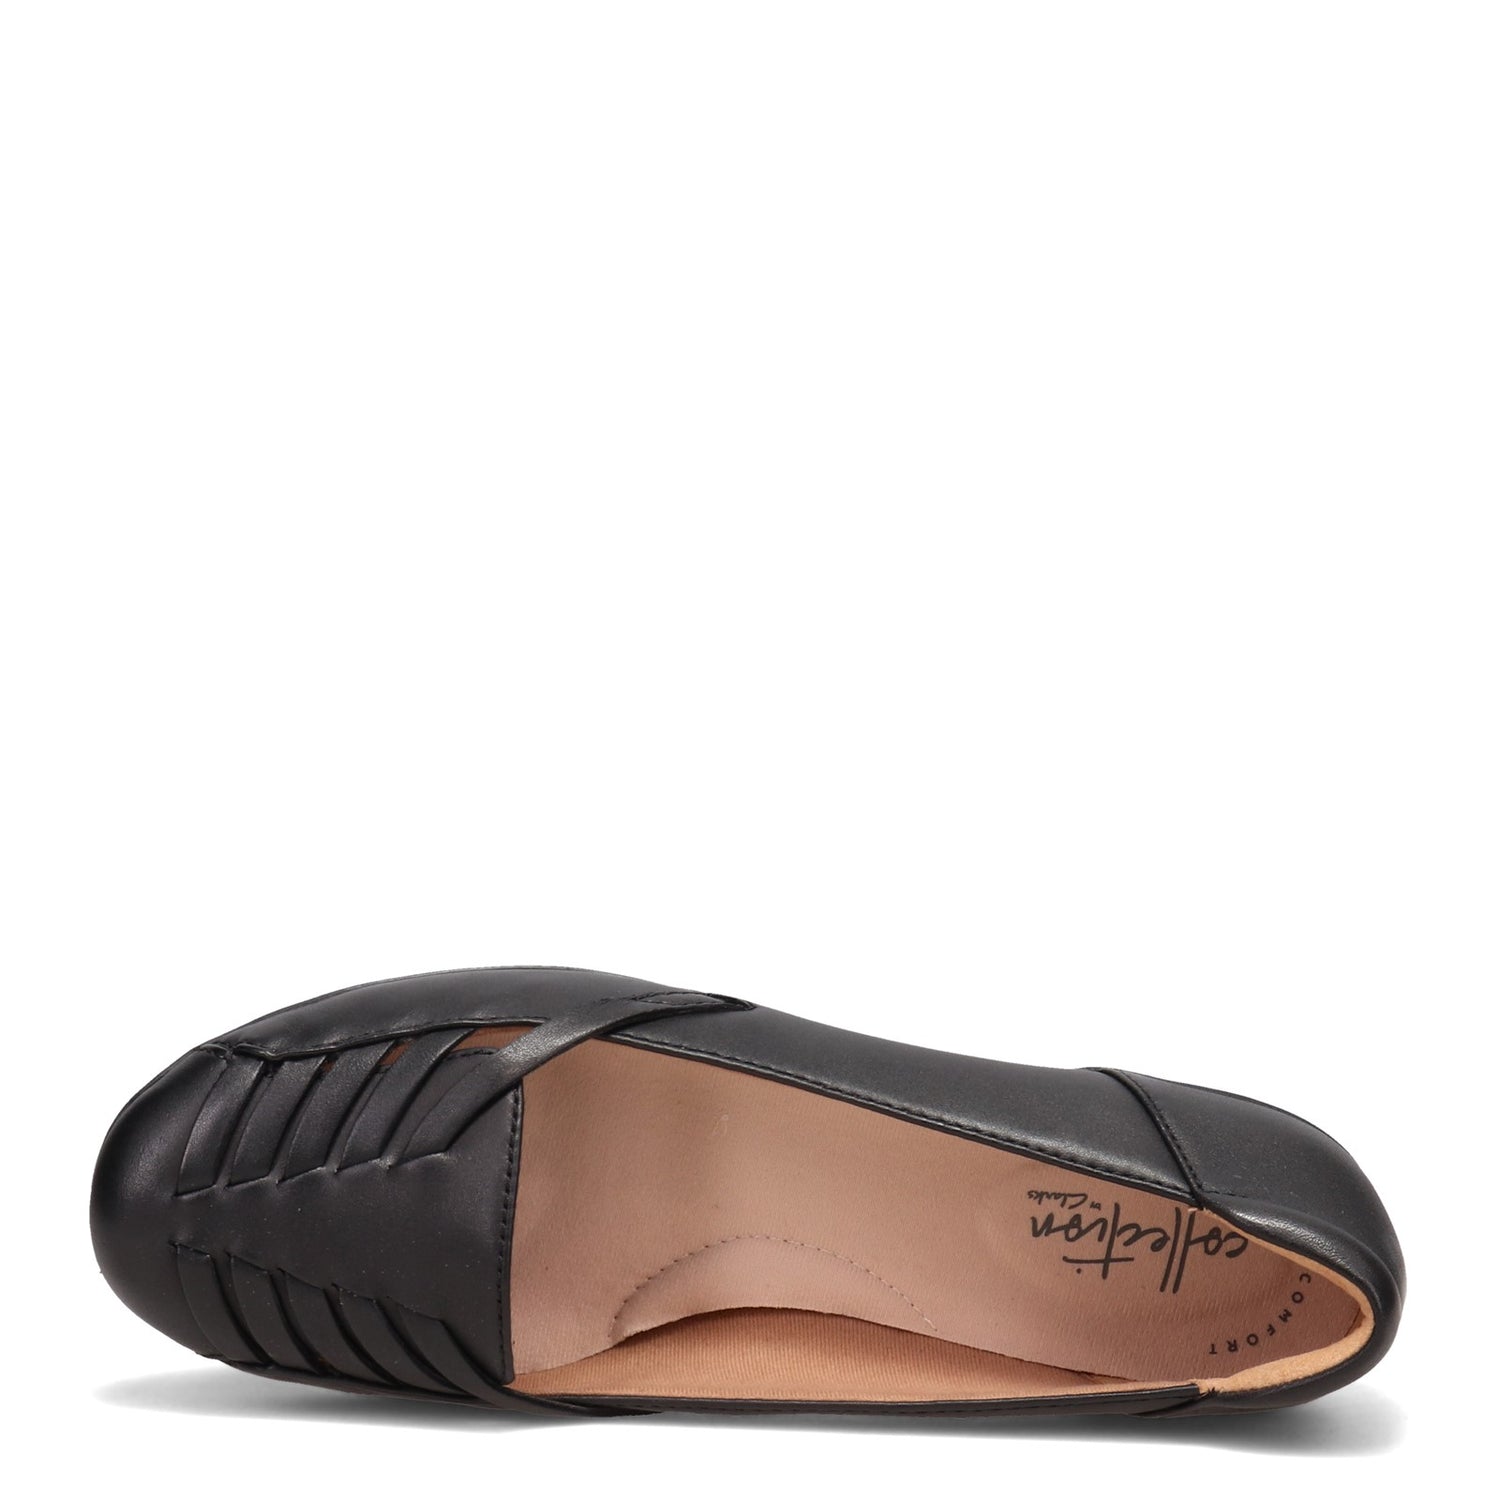 Peltz Shoes  Women's Clarks Gracelin Gemma Flat BLACK 26125289